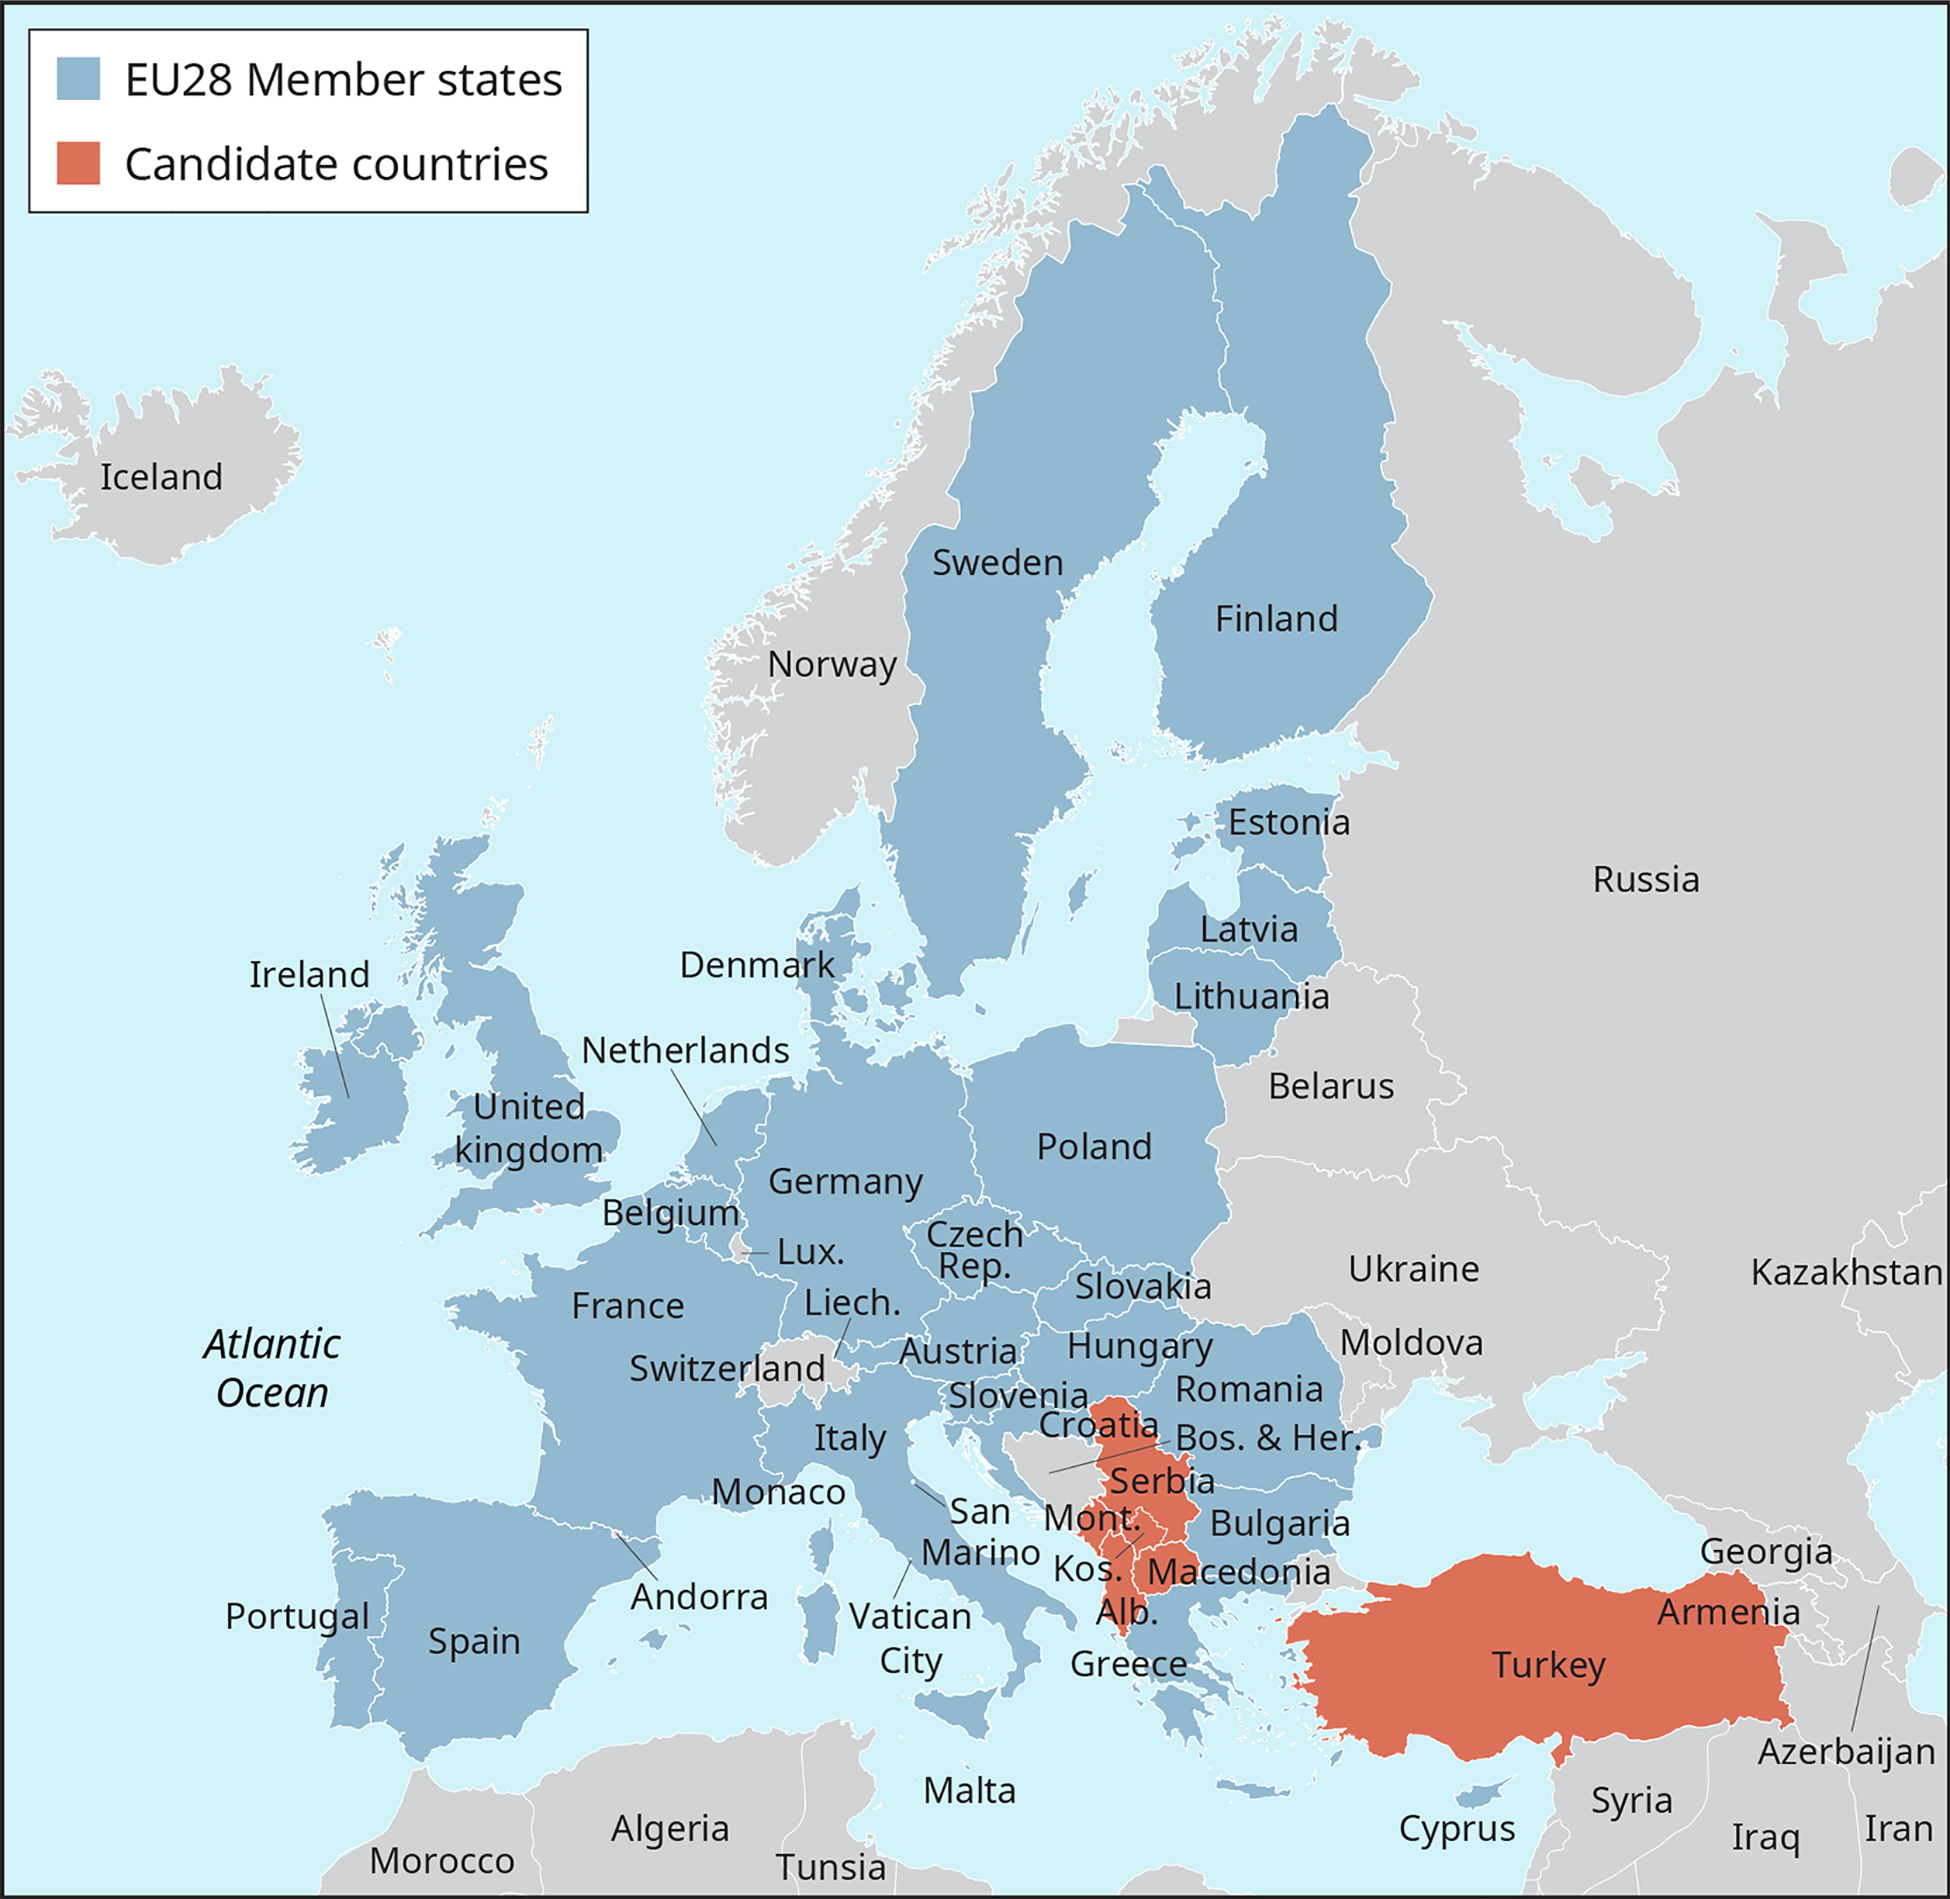 تم ترميز خريطة أوروبا بالألوان لإظهار الدول الأعضاء في E U 28، وتلك البلدان المرشحة.